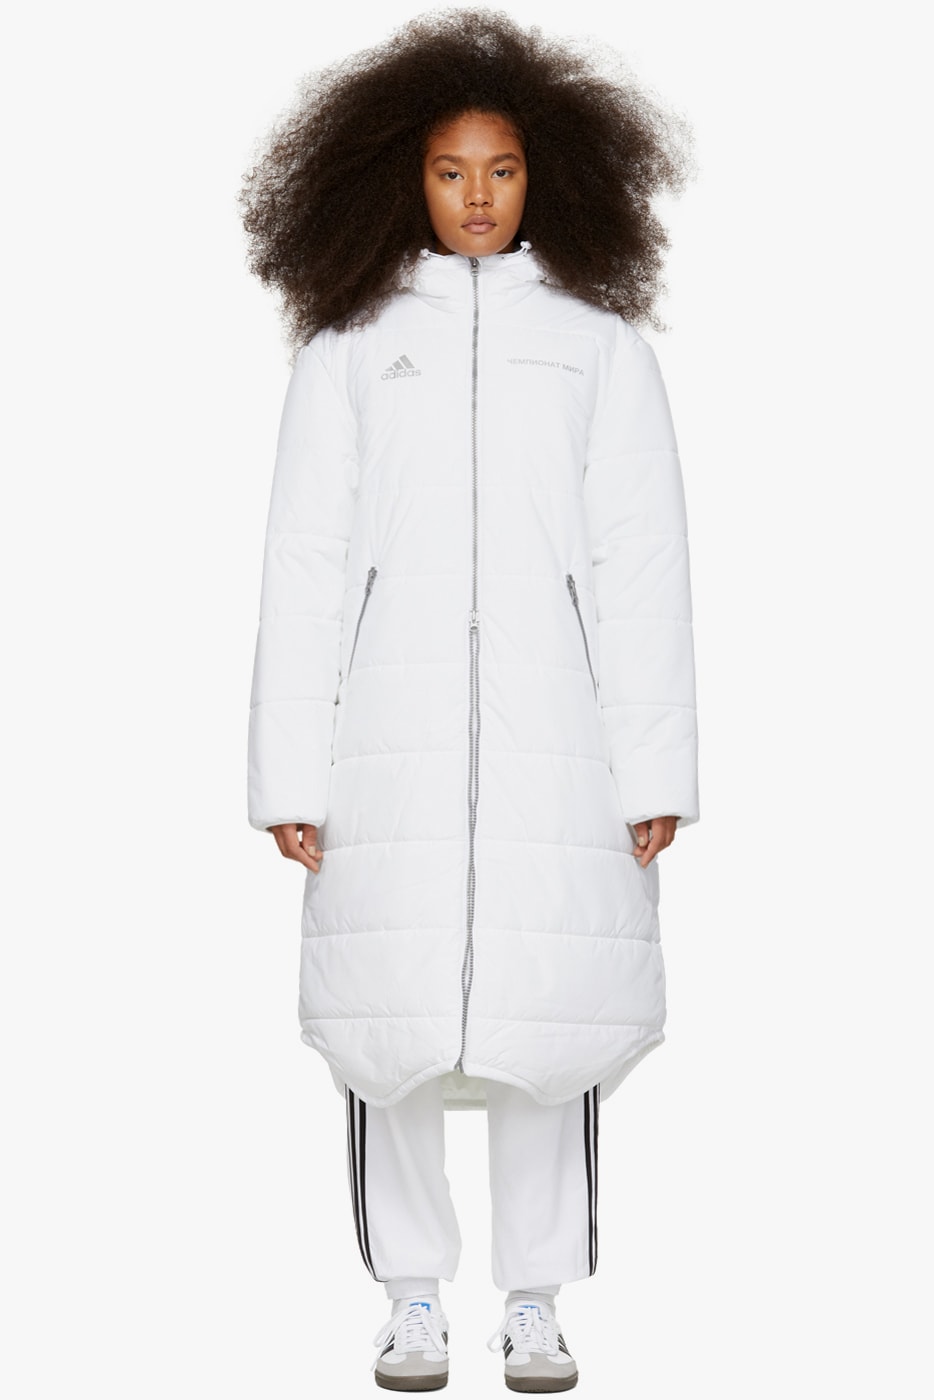 Gosha Rubchinskiy Final Fall Winter 2018 Drop adidas Originals Long Puffer Coat White